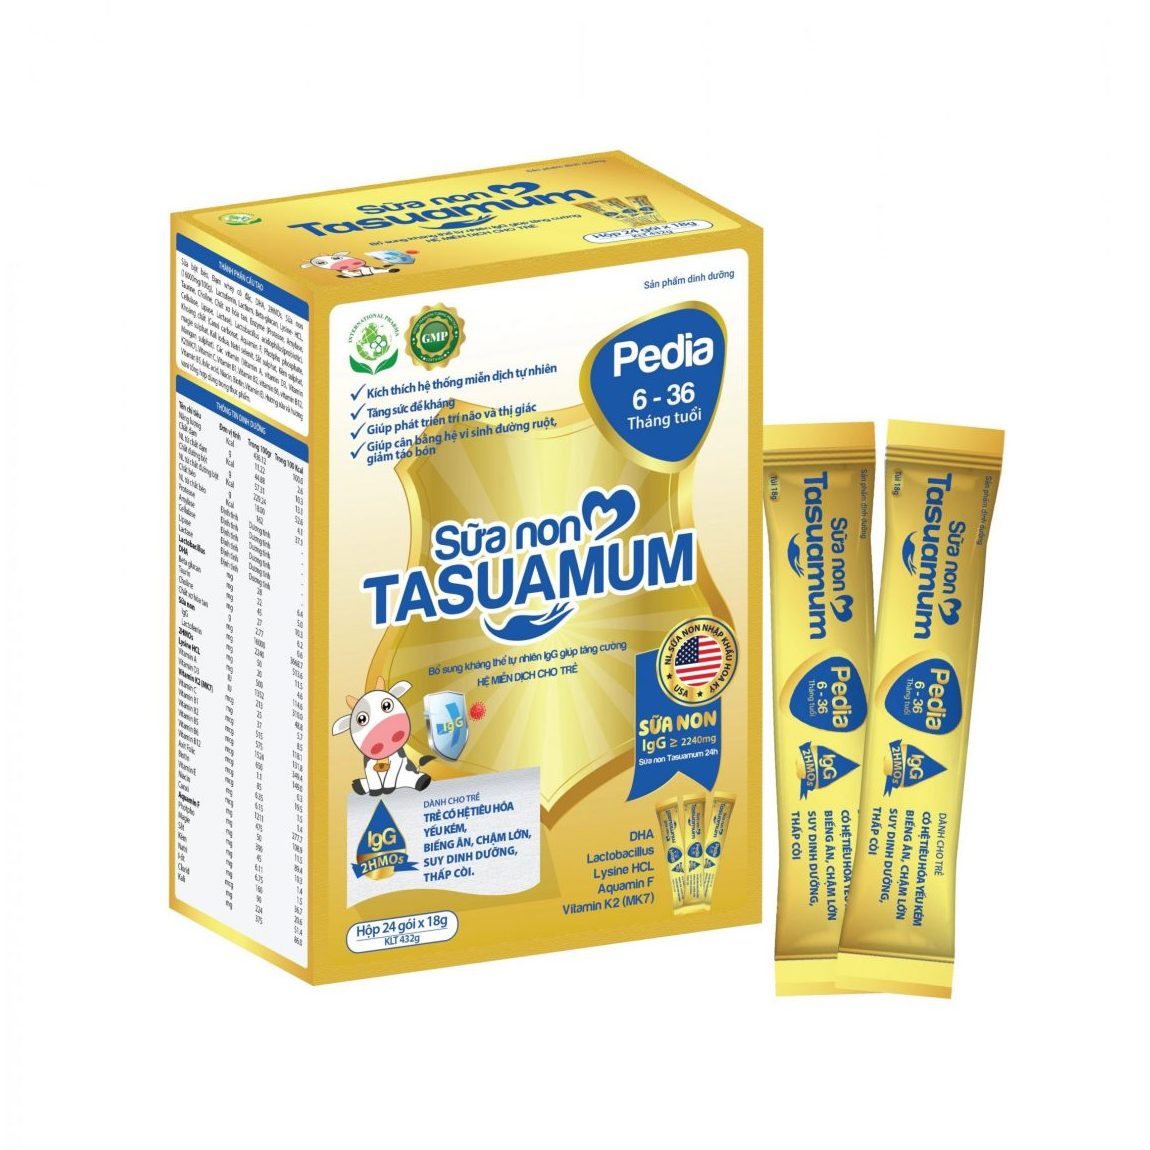 Sữa Non Tasuamum Pedia (24 gói x 18g) | Hỗ trợ trẻ biếng ăn, chậm lớn, suy dinh dưỡng, thấp còi từ 6-36 tháng tuổi | Thương hiệu Tasuamom